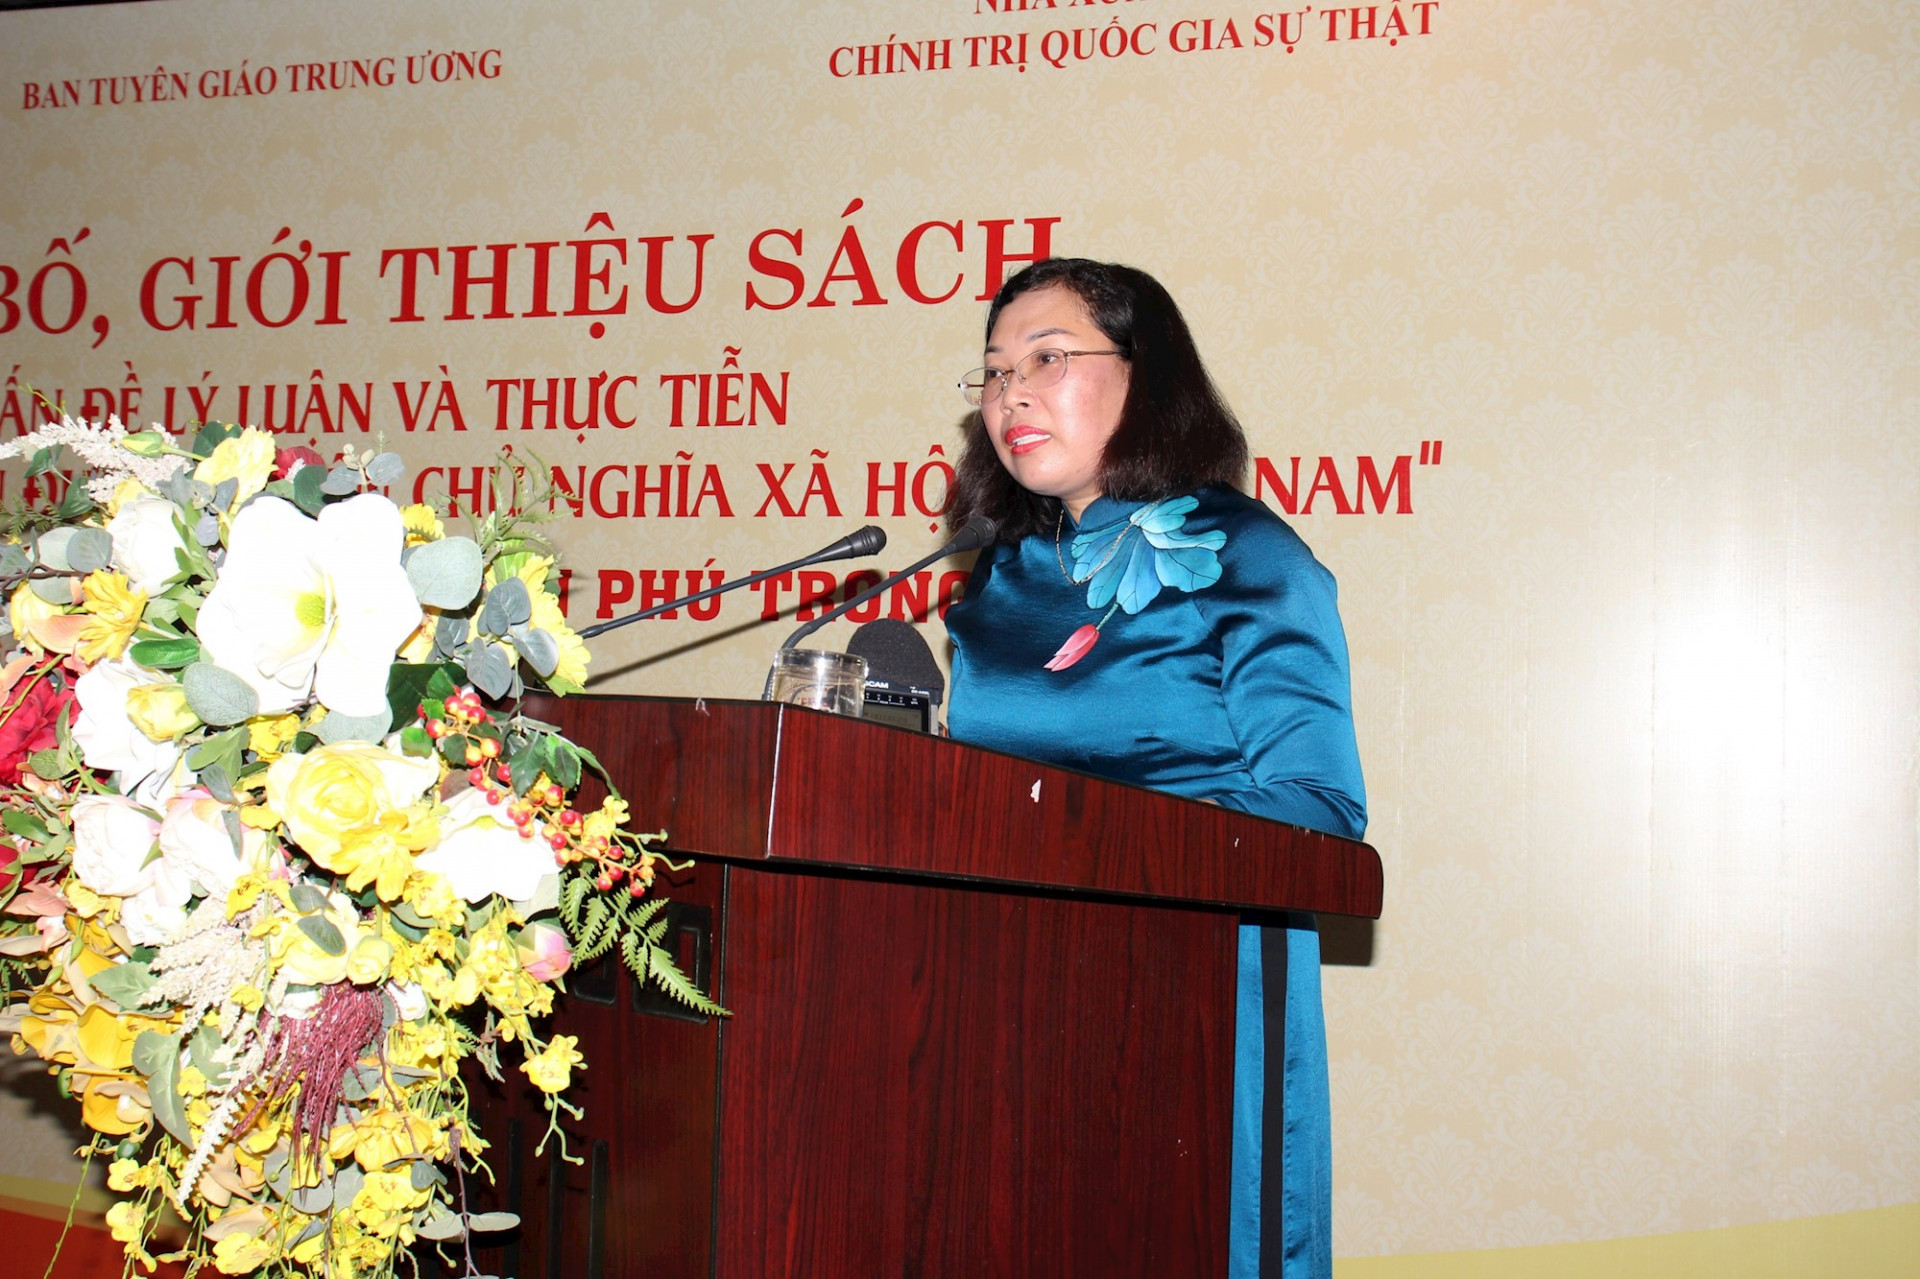 Phó Giám đốc, Phó Tổng Biên tập Nhà Xuất bản Chính trị quốc gia Sự thật Phạm Thị Thinh giới thiệu về sách.

